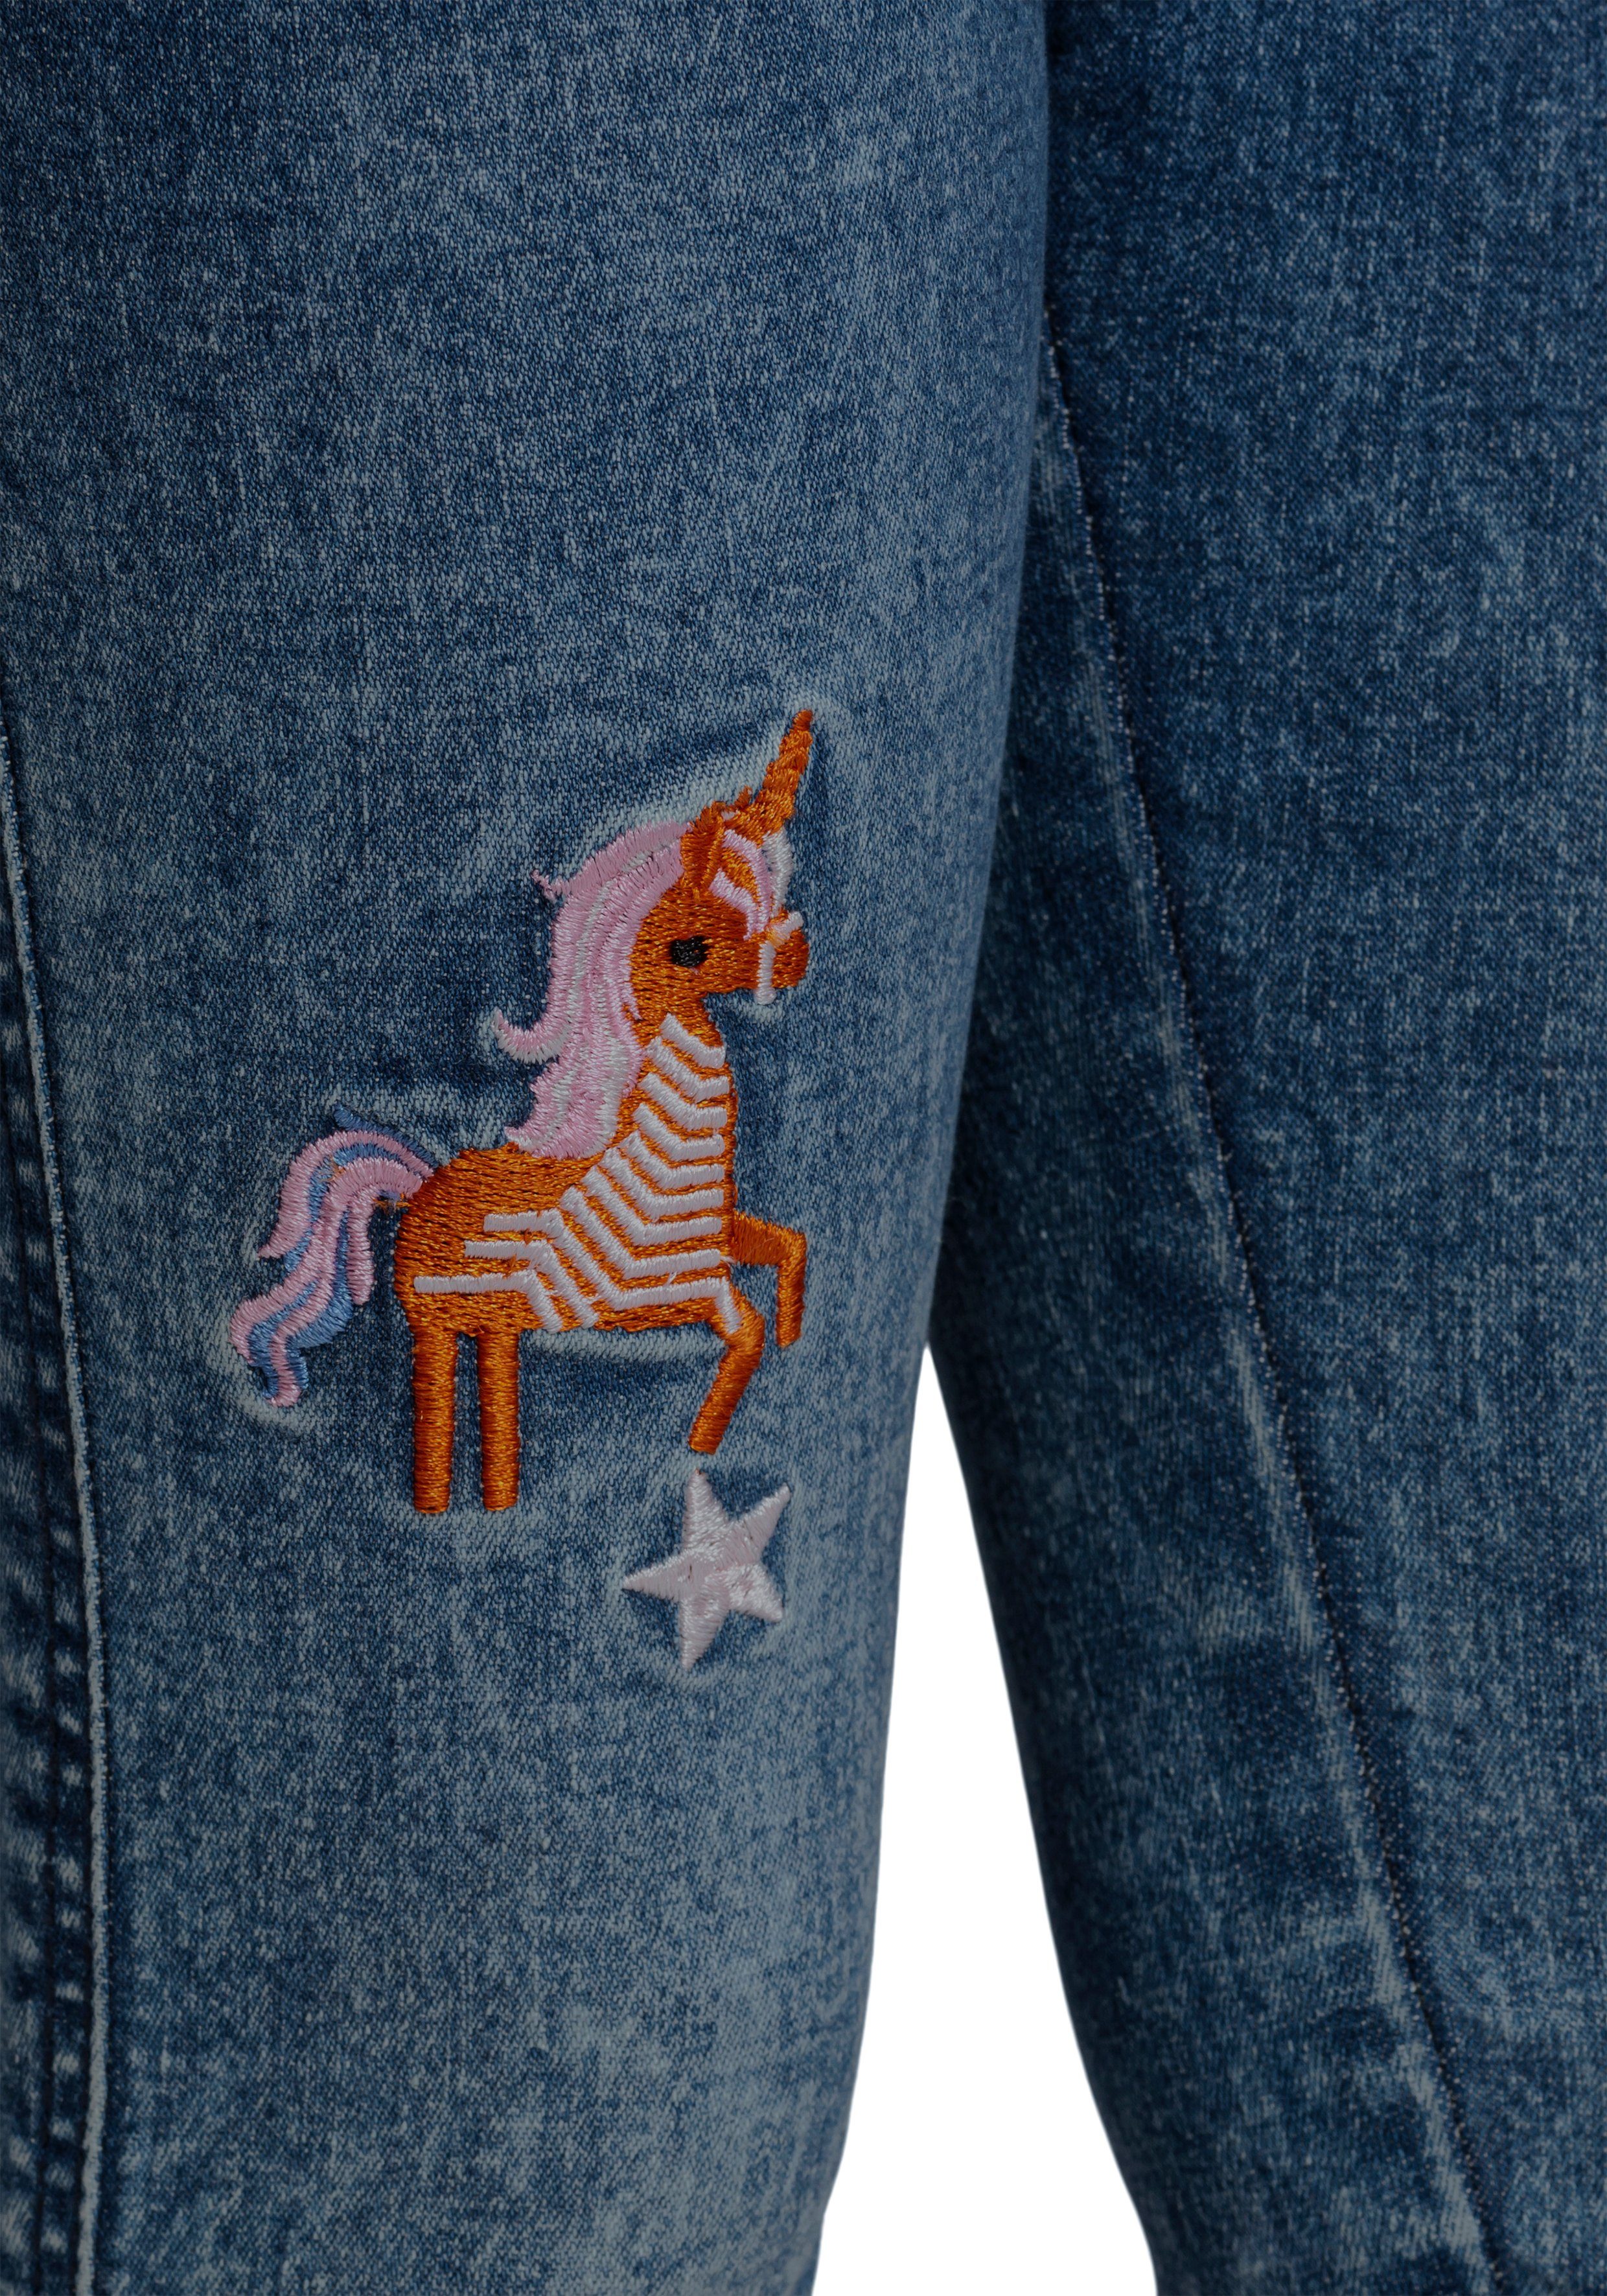 KIDSWORLD Stretch-Jeans mit toller Stickerei